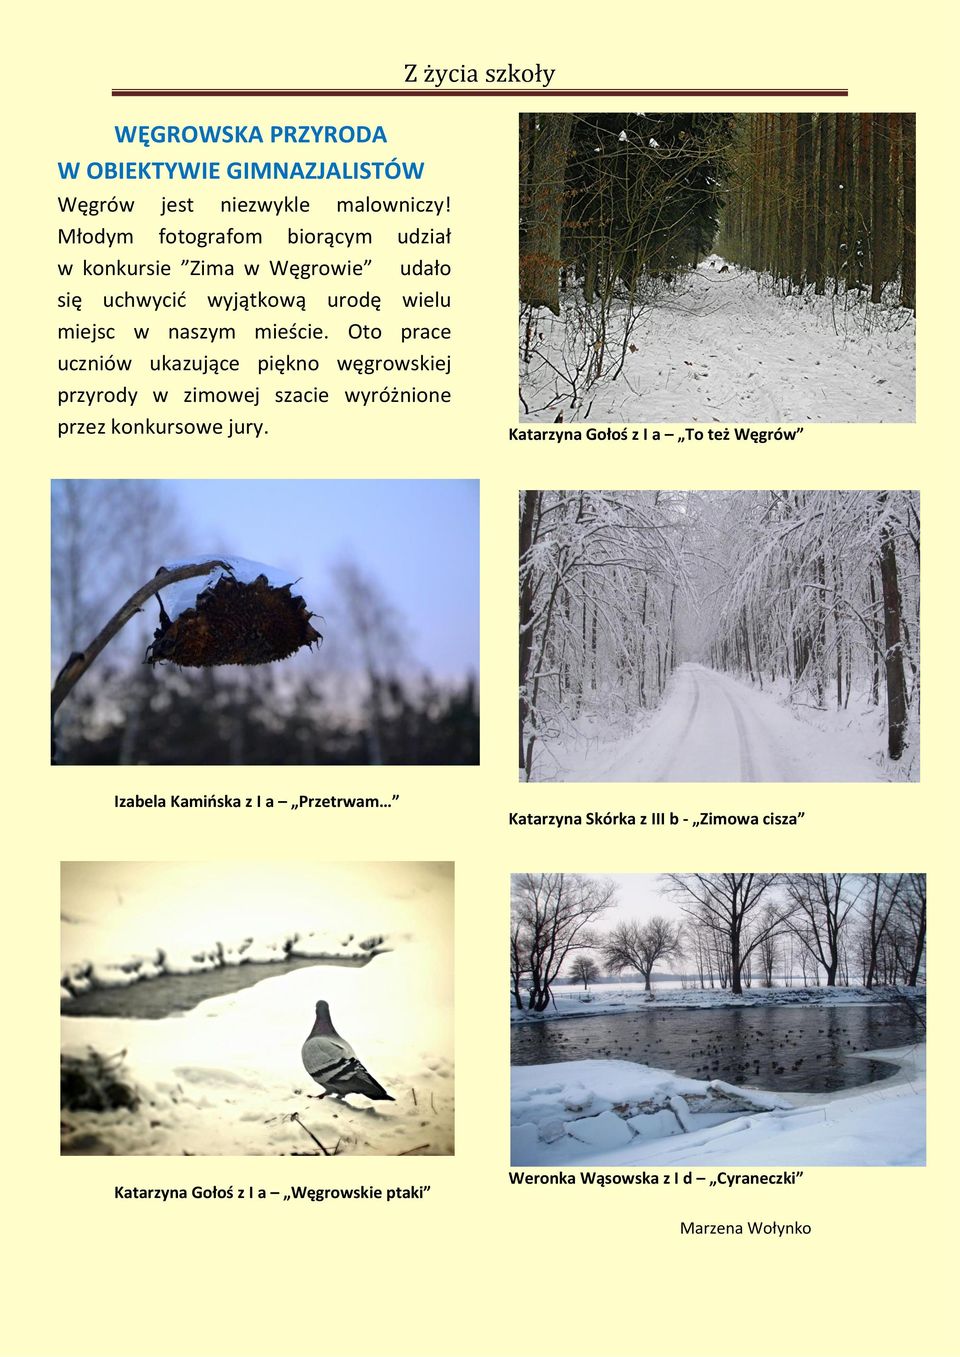 Oto prace uczniów ukazujące piękno węgrowskiej przyrody w zimowej szacie wyróżnione przez konkursowe jury.